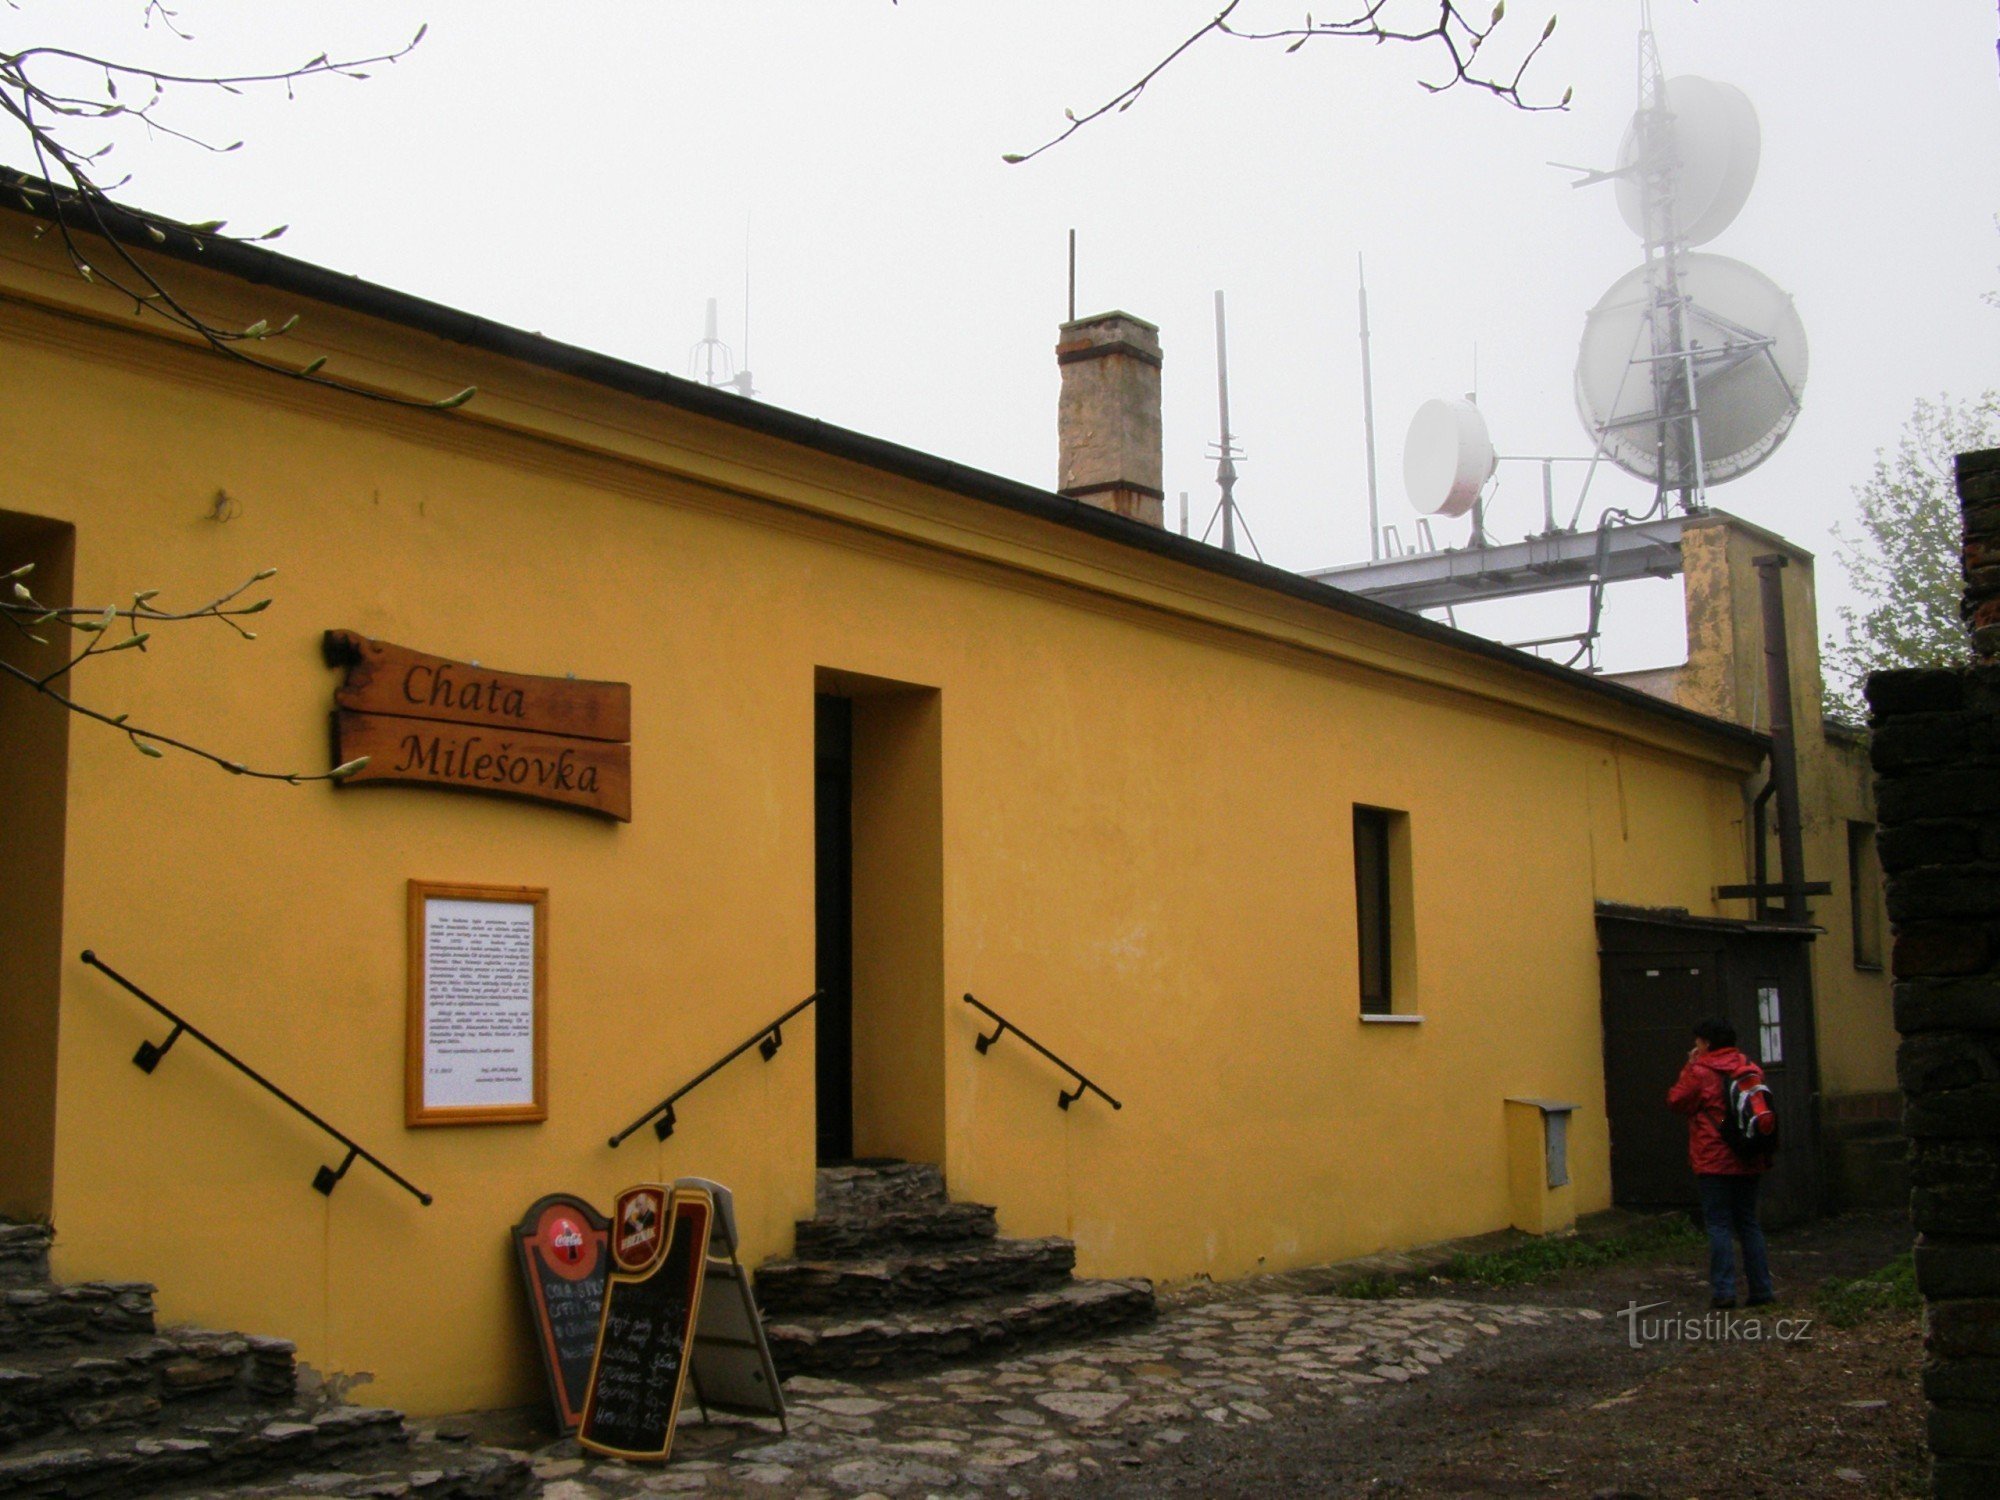 pe lângă bufet, există și un restaurant recent deschis în Milešovka